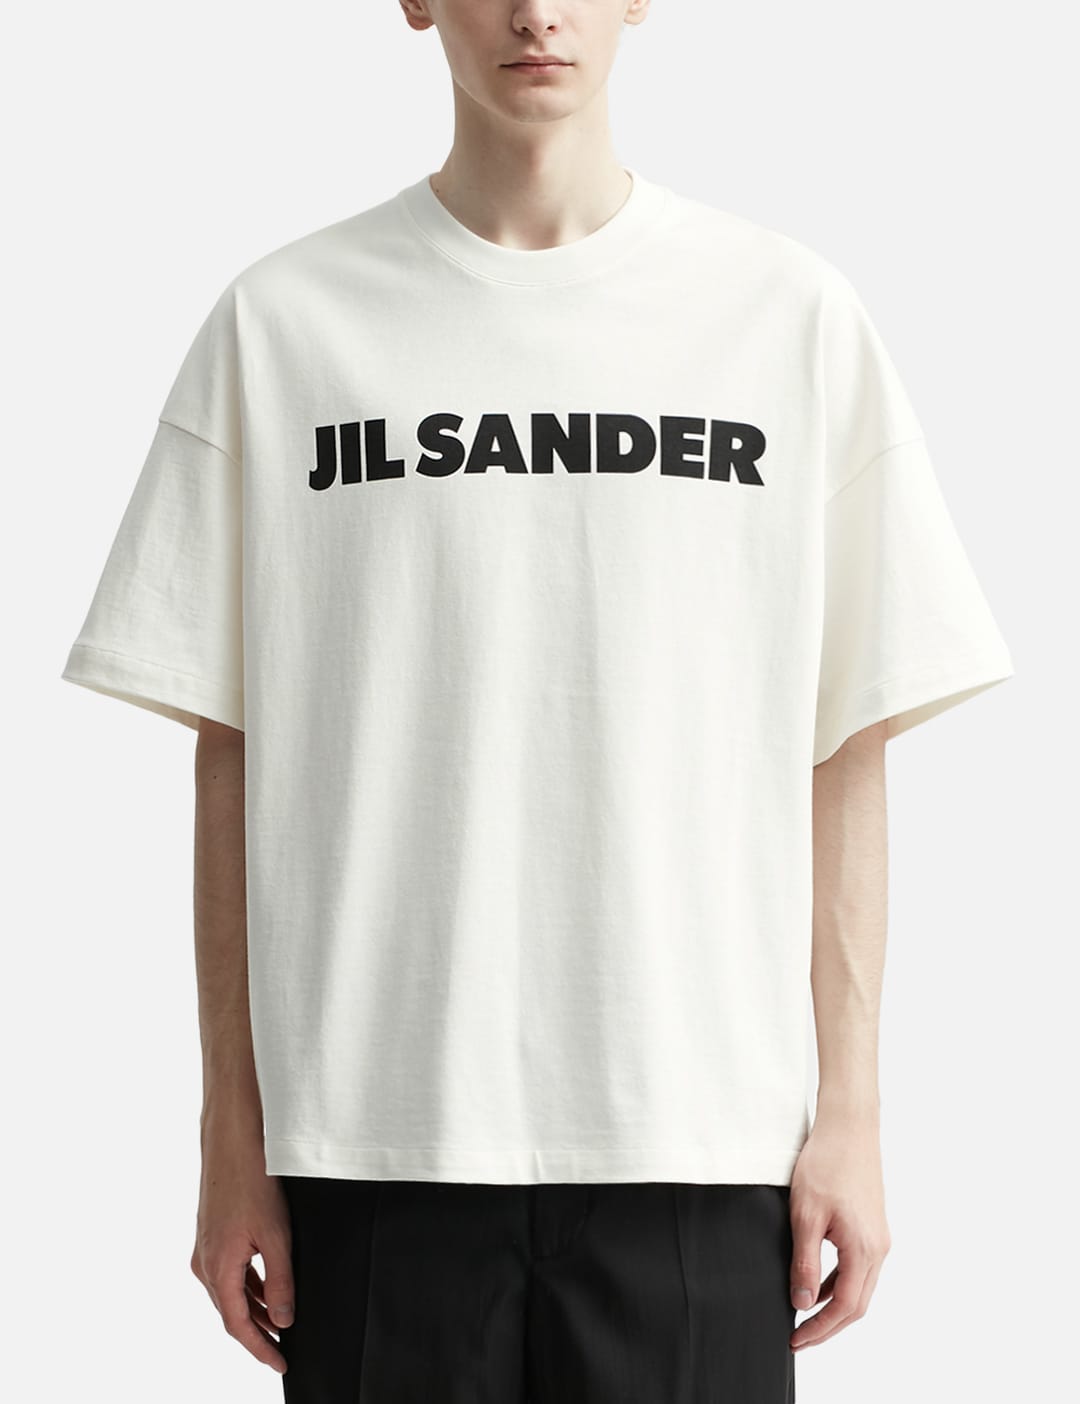 jilsander ロゴTシャツよろしくお願い致します